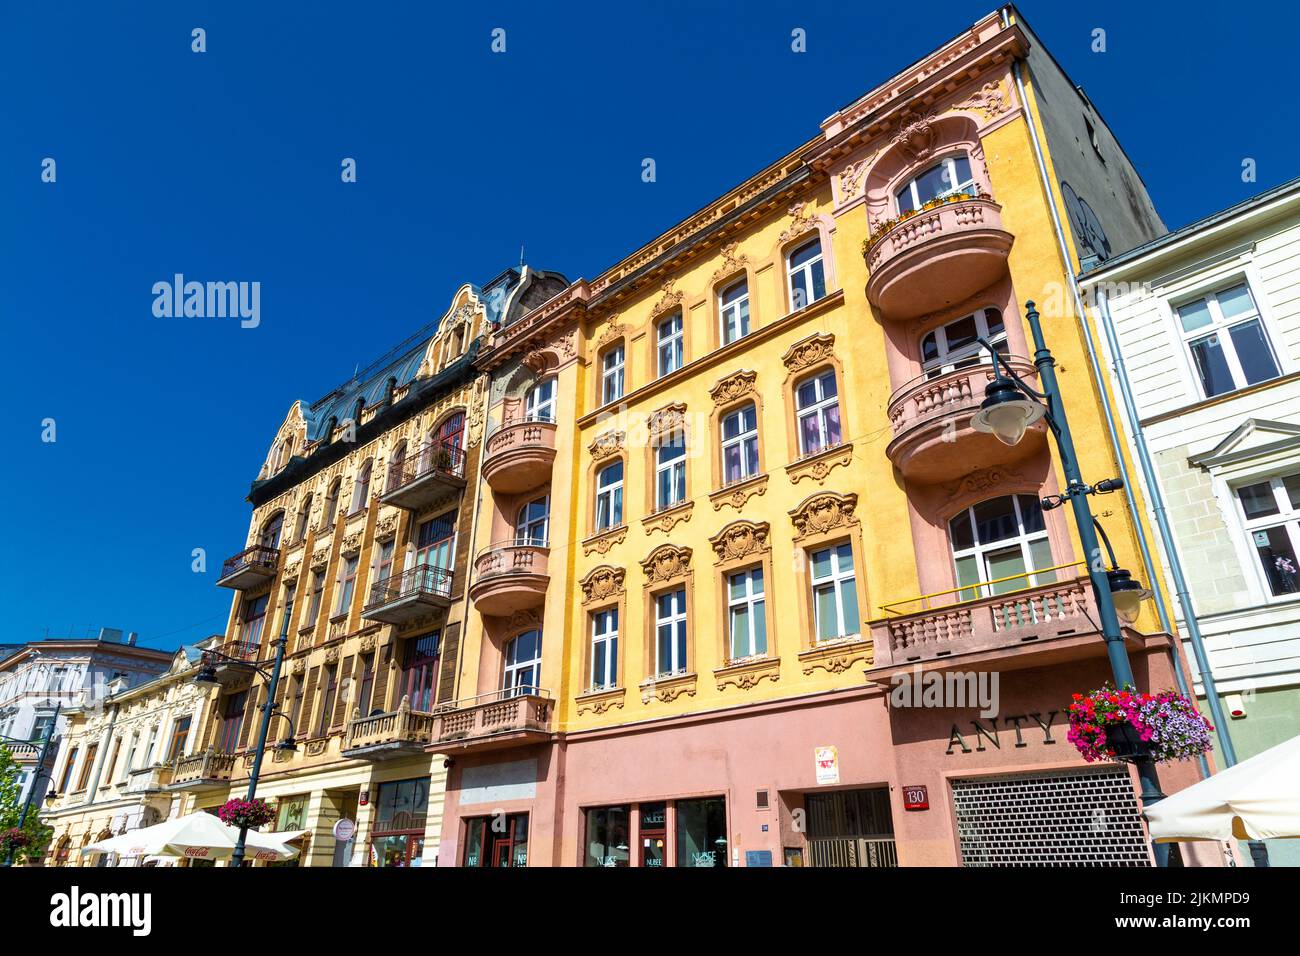 Farbenfrohe, reich verzierte Jugendstilhäuser in der Piotrkoswska Straße, Lodz, Polen Stockfoto